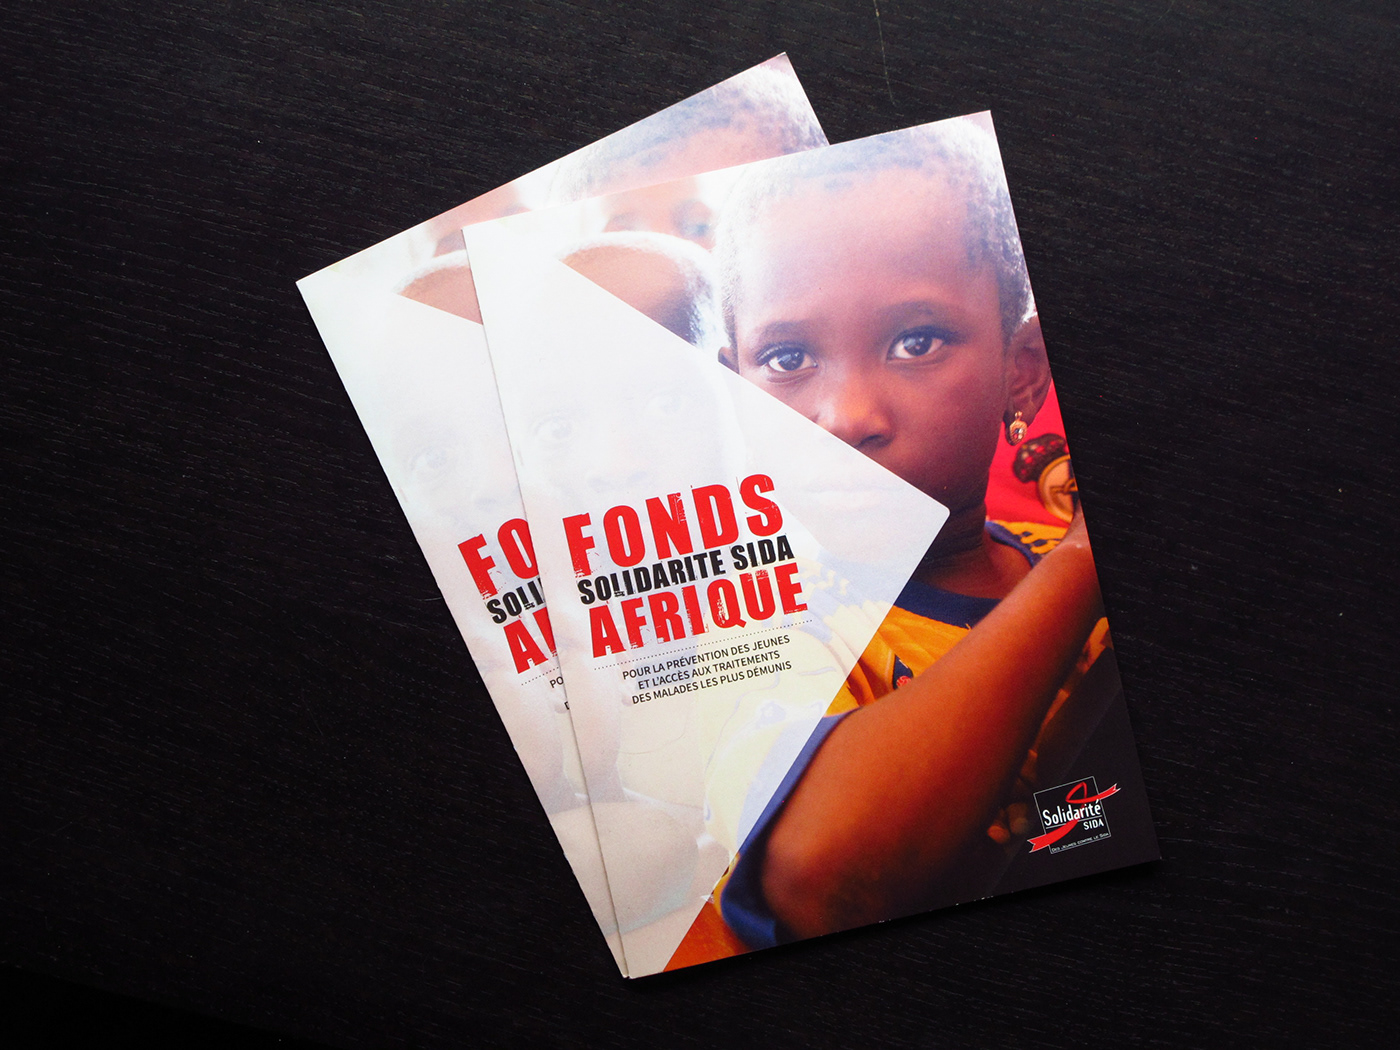 leaflet solidarité sida communication engagement prevention solidarité sida afrique Association